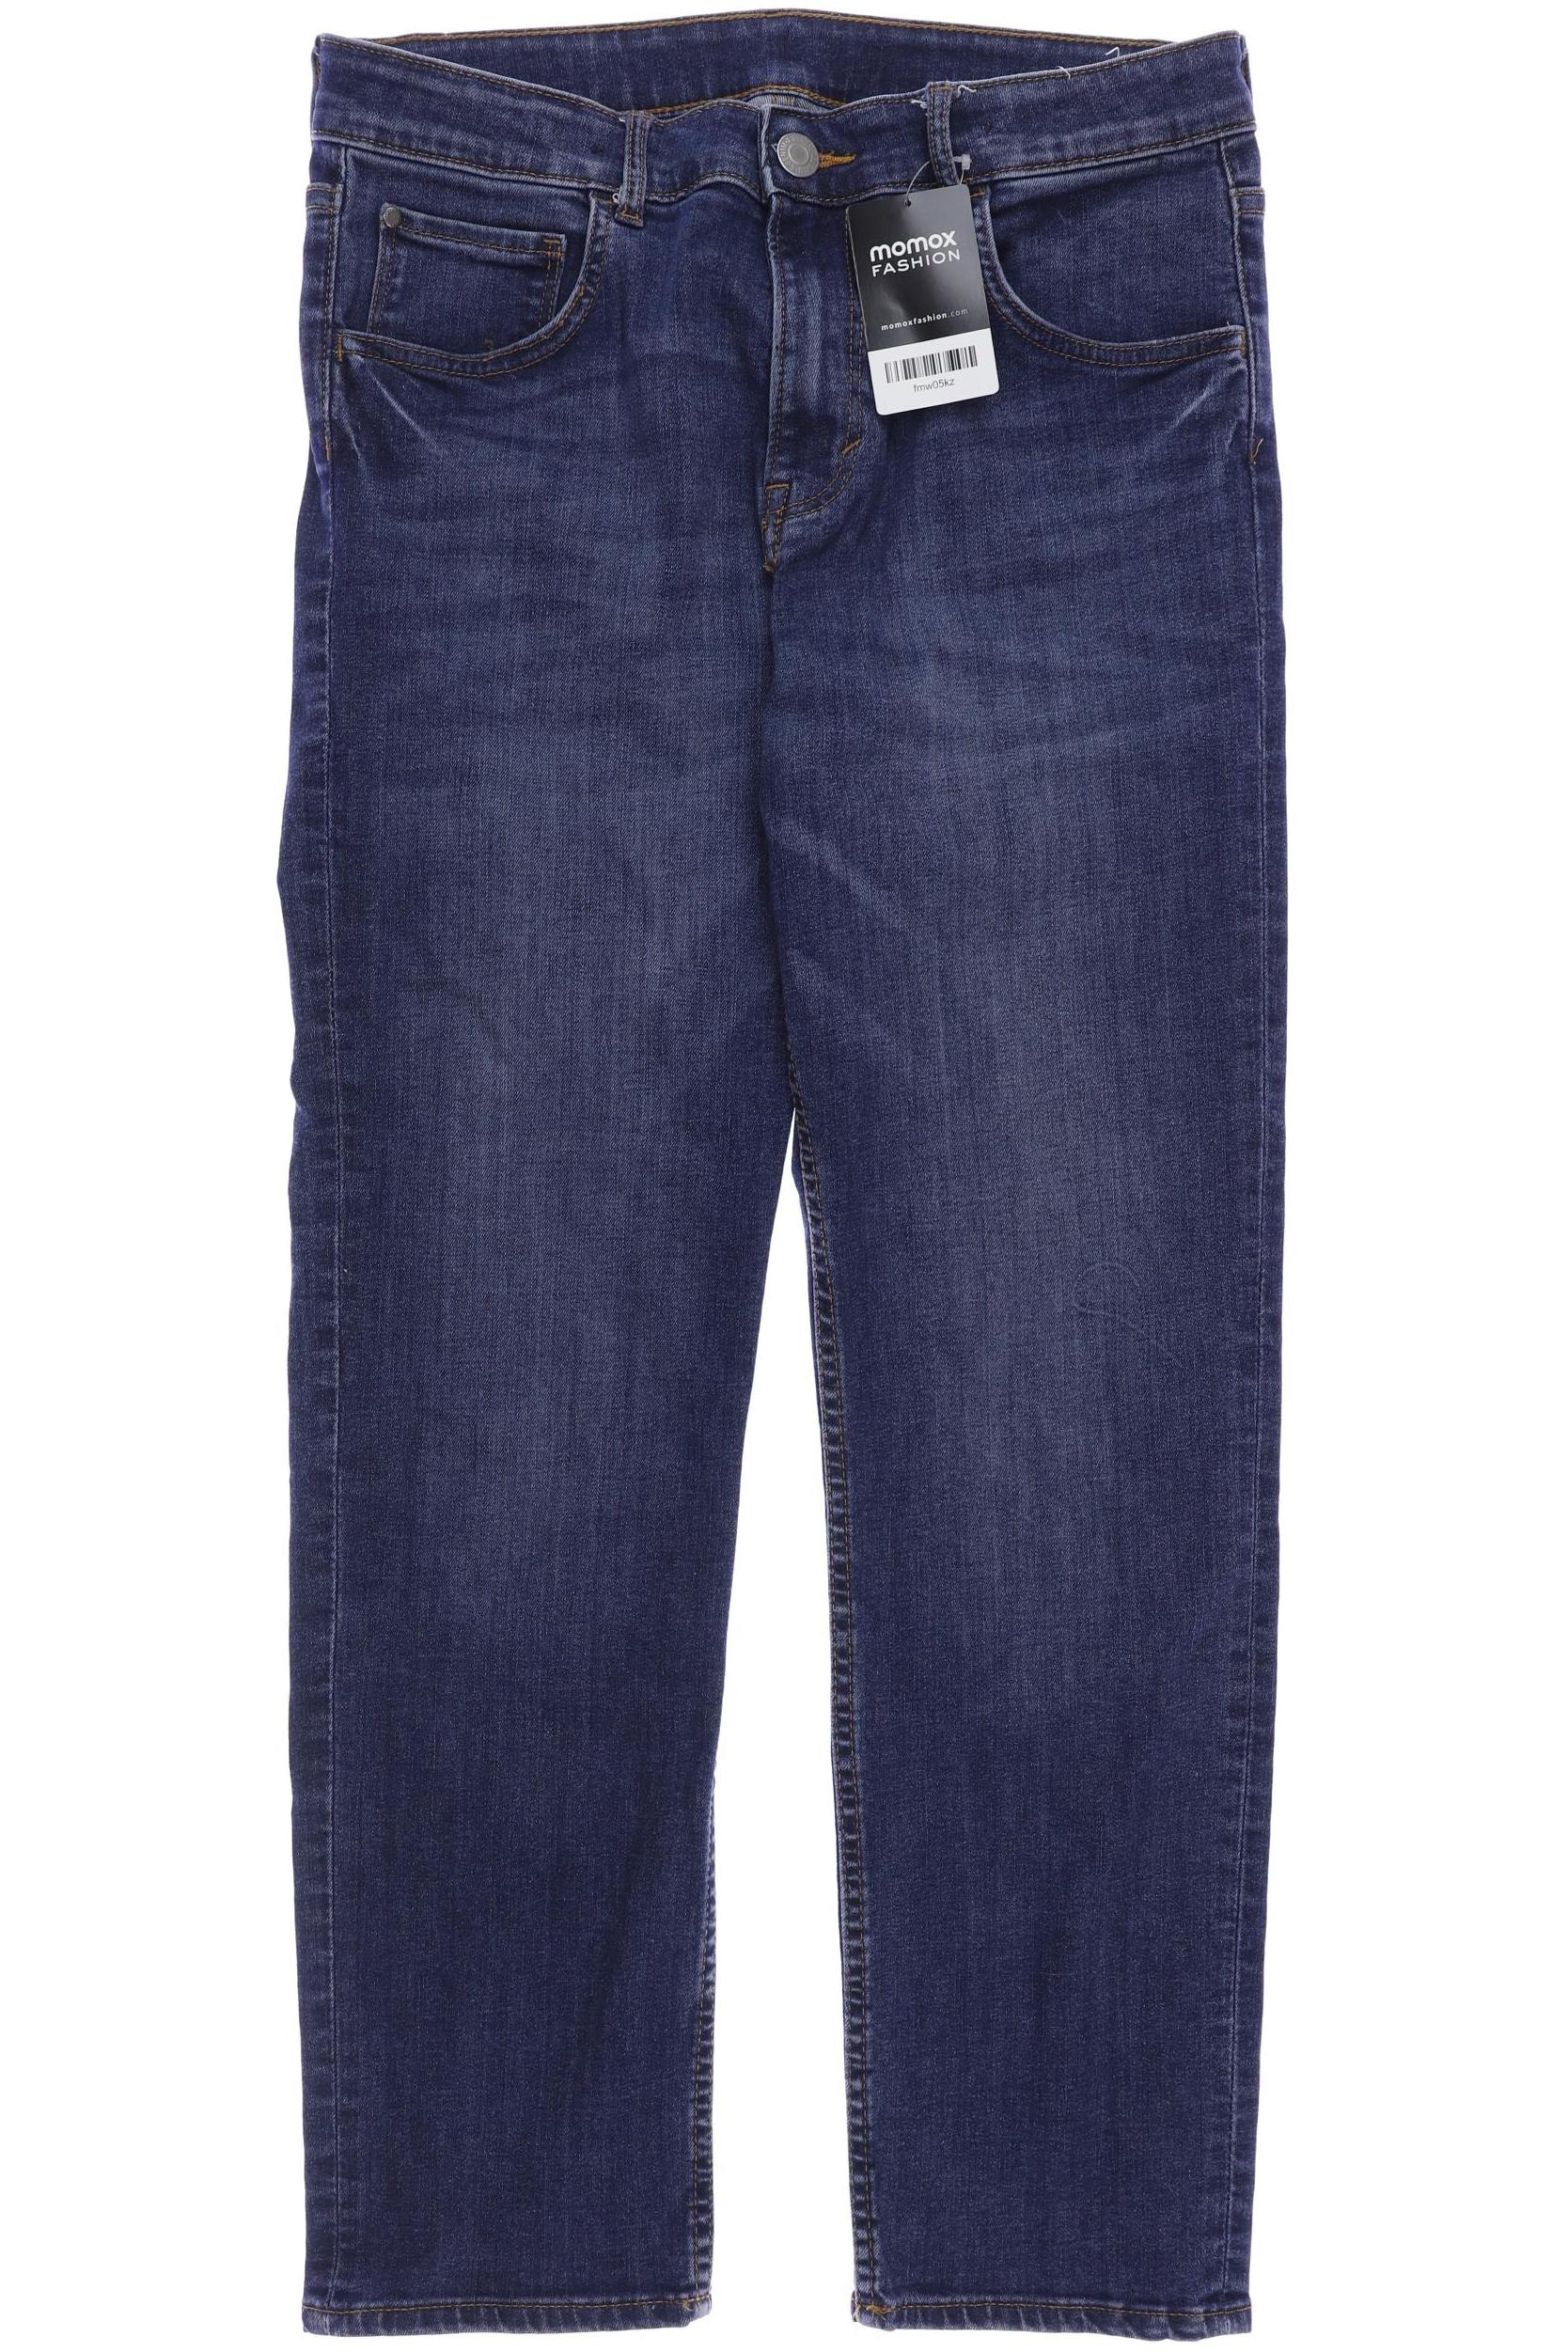 H&M Damen Jeans, blau, Gr. 170 von H&M